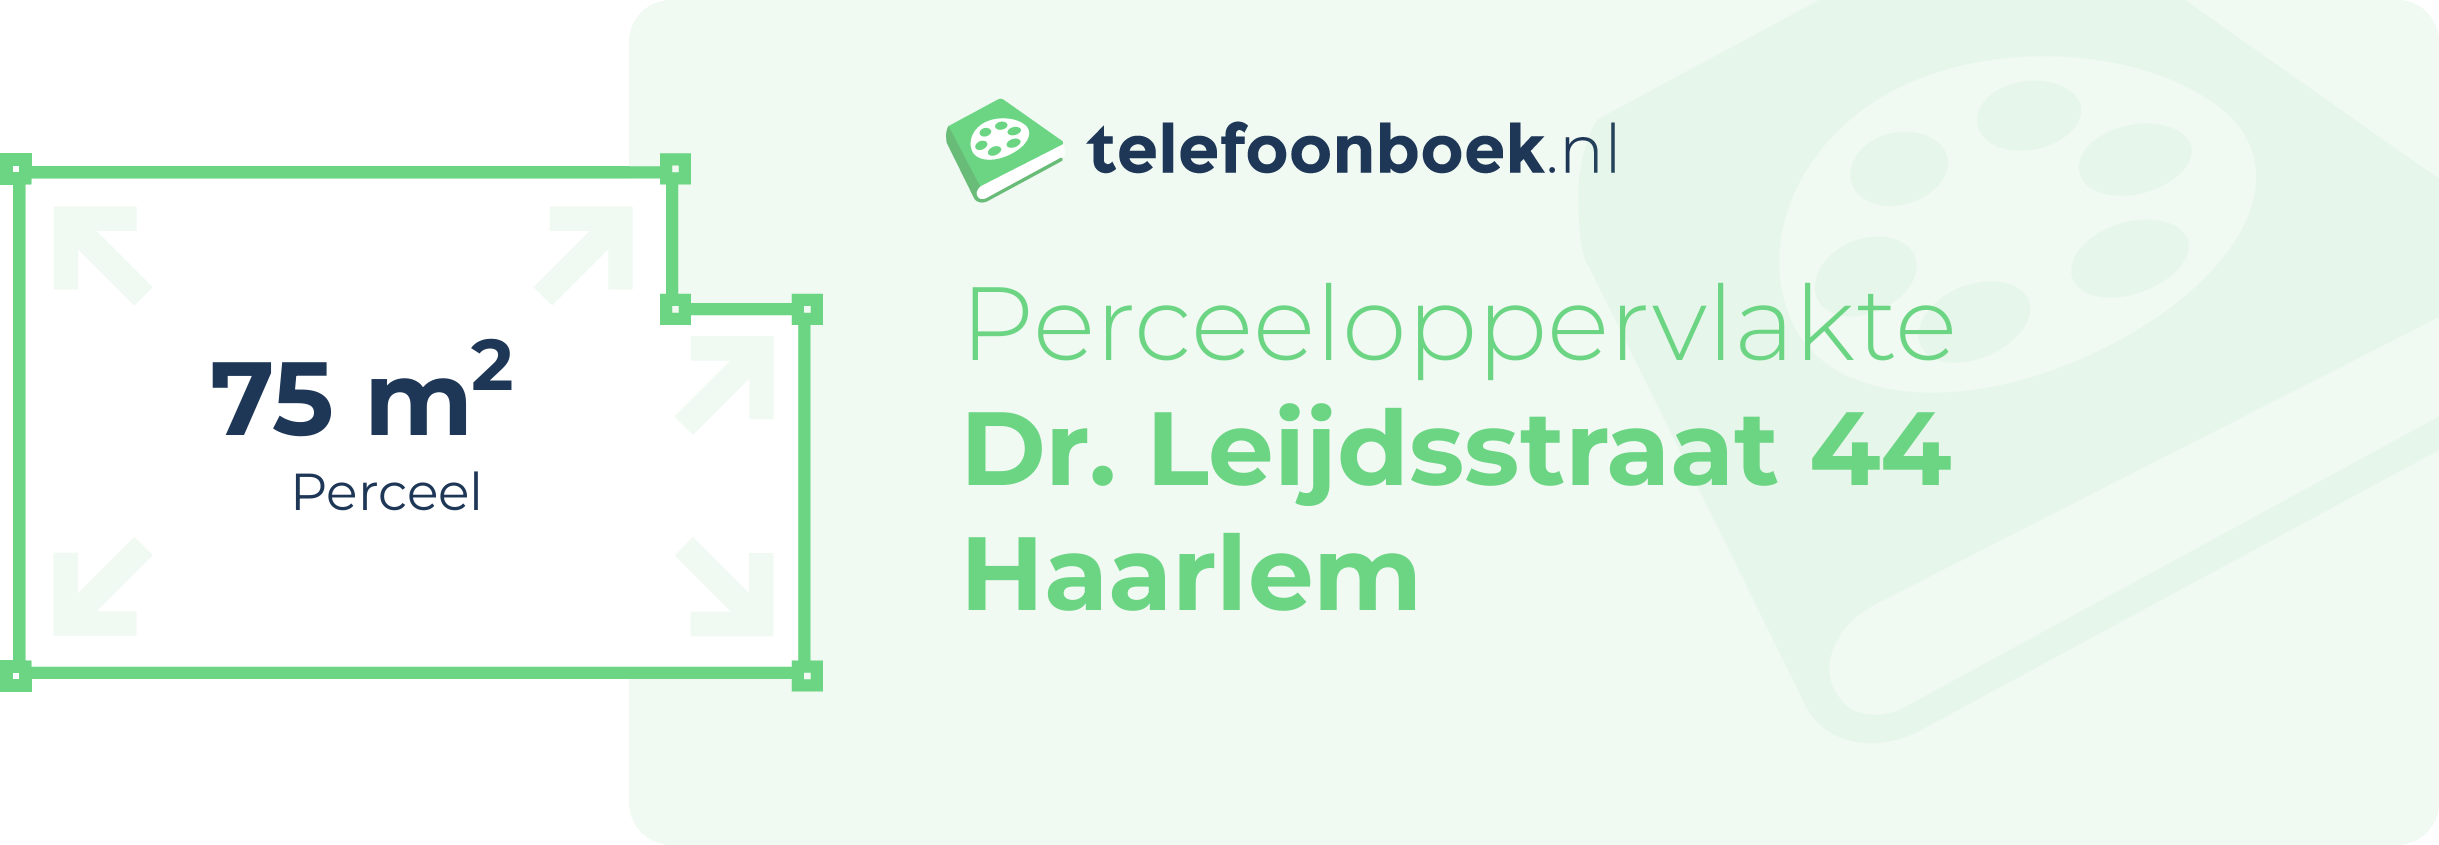 Perceeloppervlakte Dr. Leijdsstraat 44 Haarlem